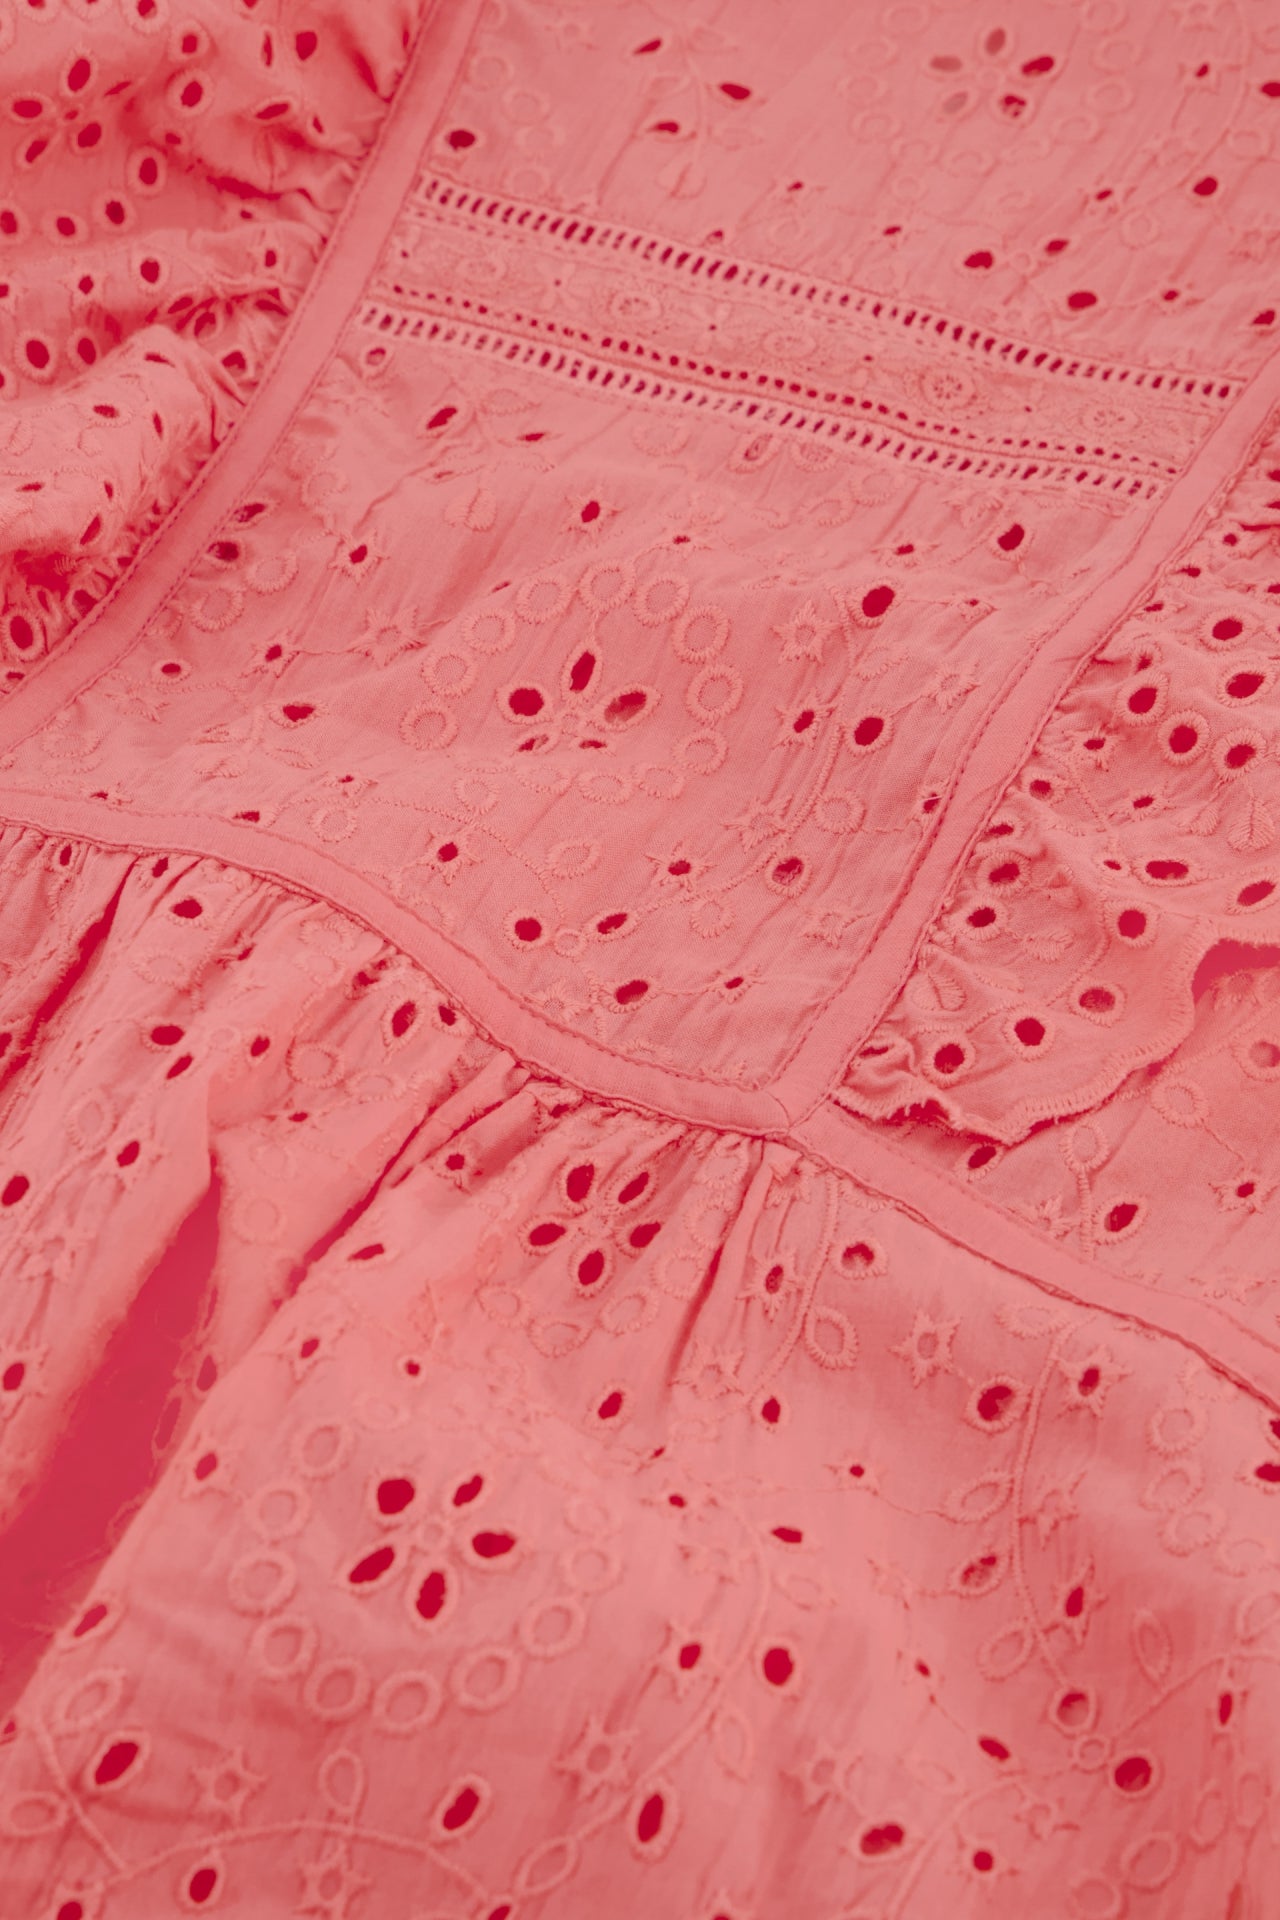 A close up of the Fabienne Chapot Gigi Top - Pink Papaya.